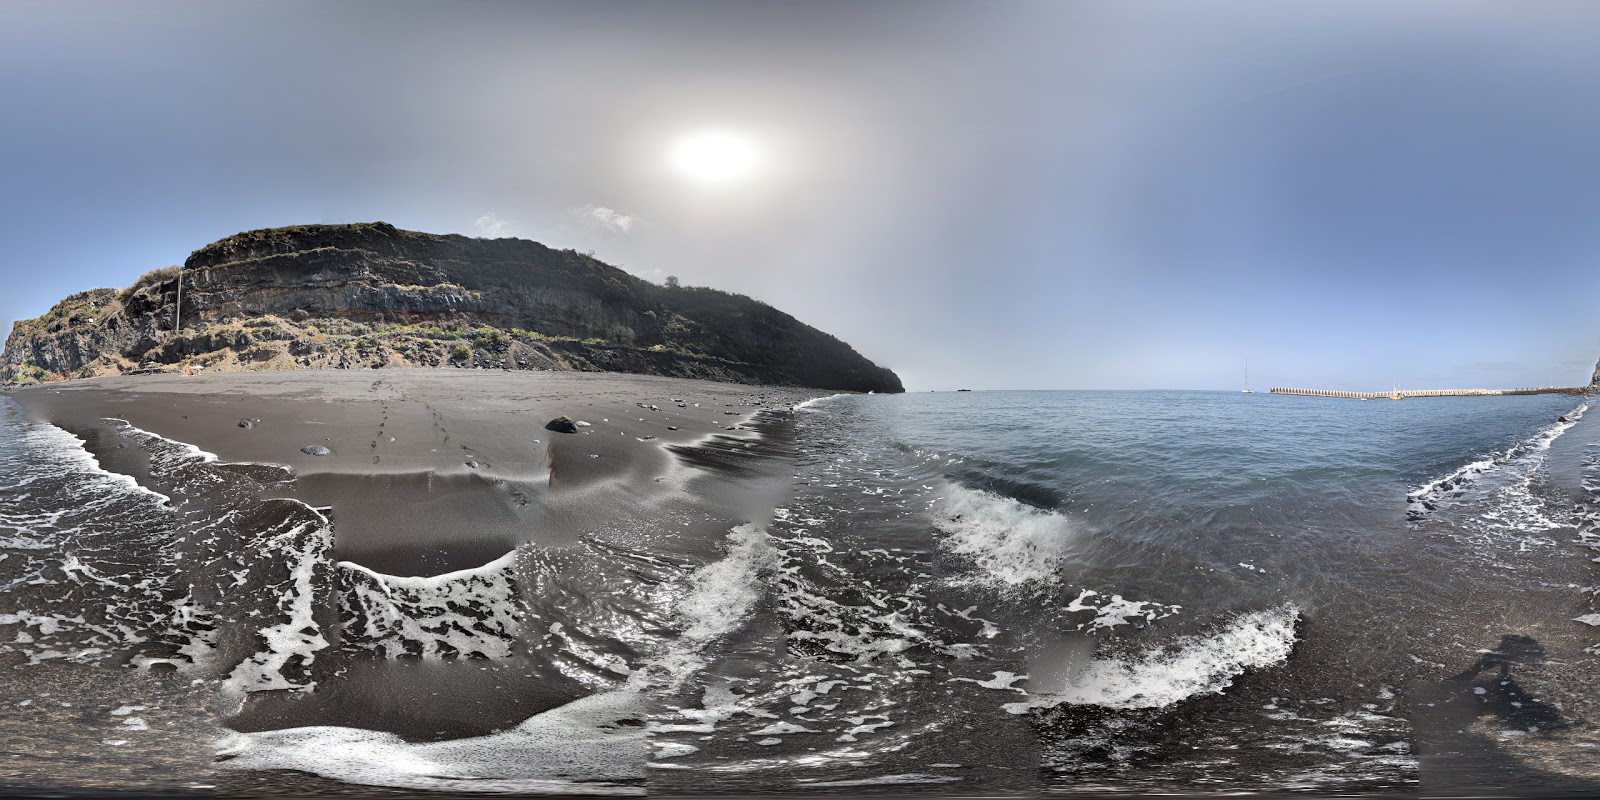 Tazacorte beach'in fotoğrafı siyah kum yüzey ile